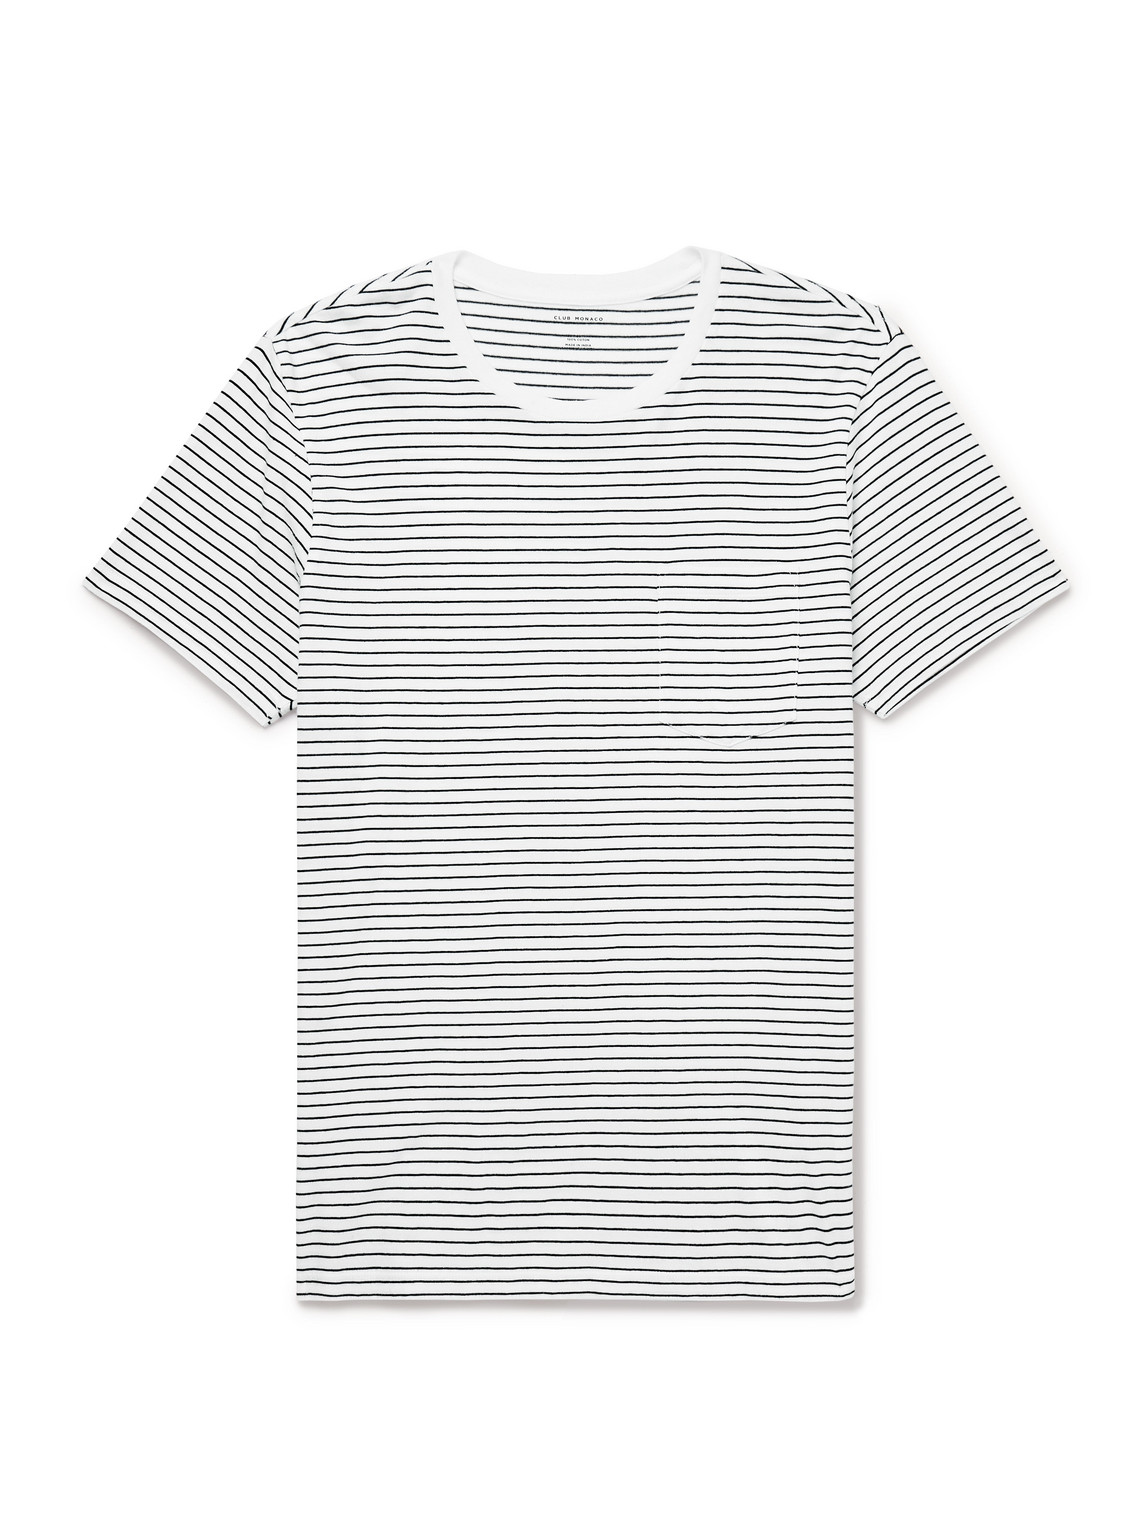 Club Monaco Williams Striped Cotton-jersey T-shirt In Multi